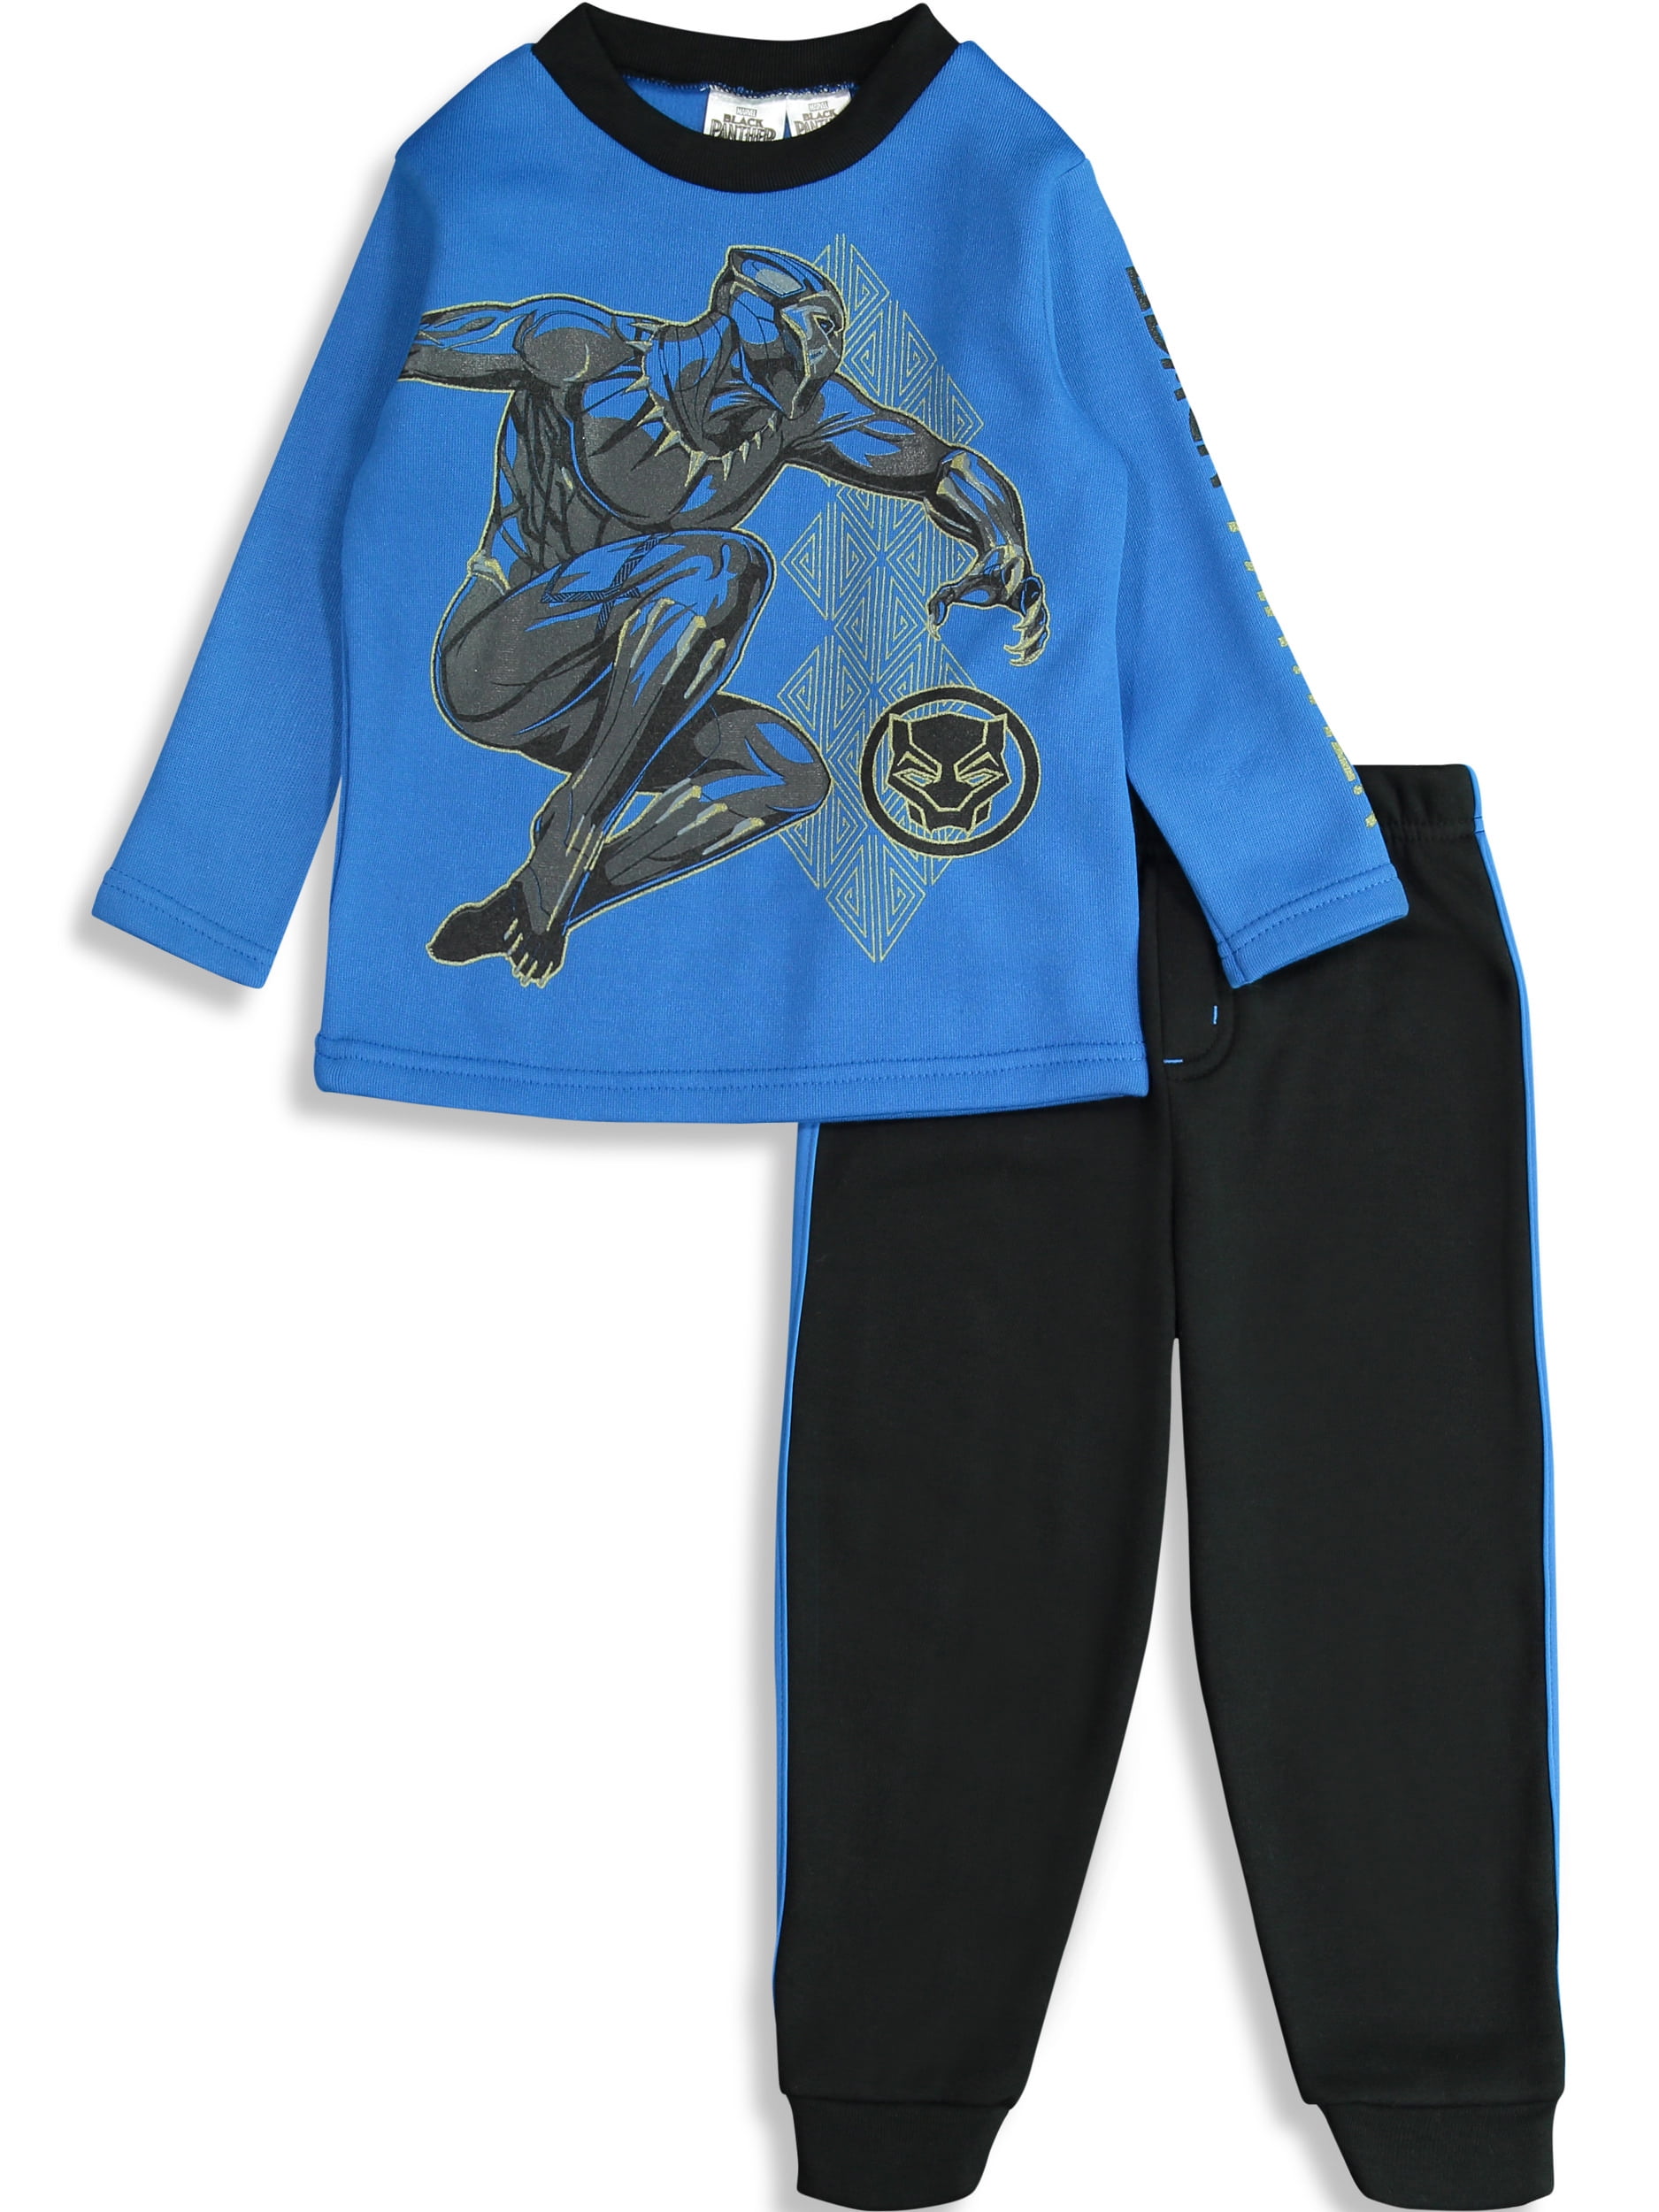 Avengers Heroes Kids T-Shirt /& Sweatpants Set